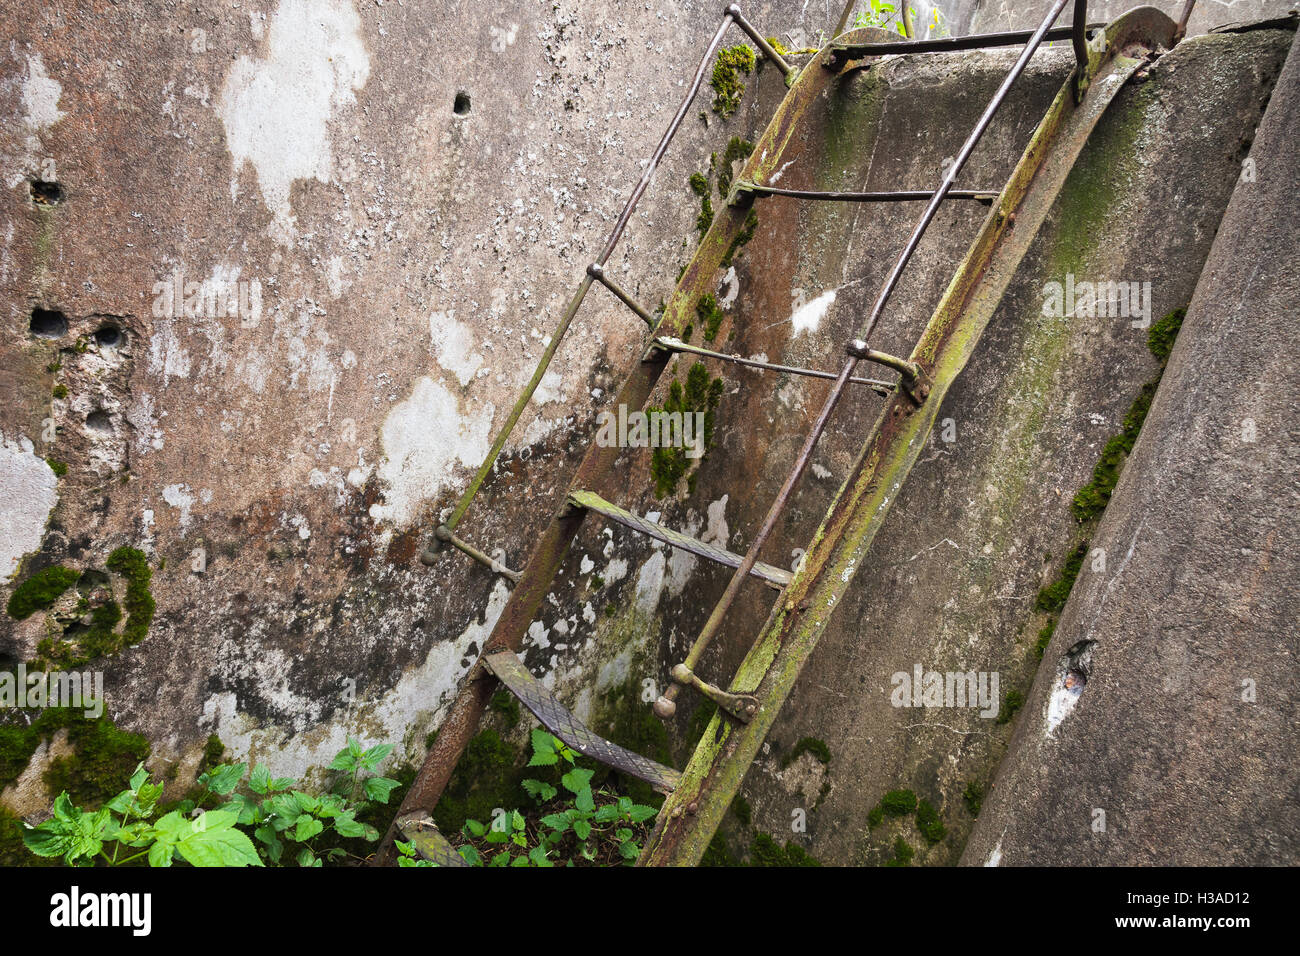 Rusted metal viejo escalera sube sobre grunge muro de hormigón Foto de stock